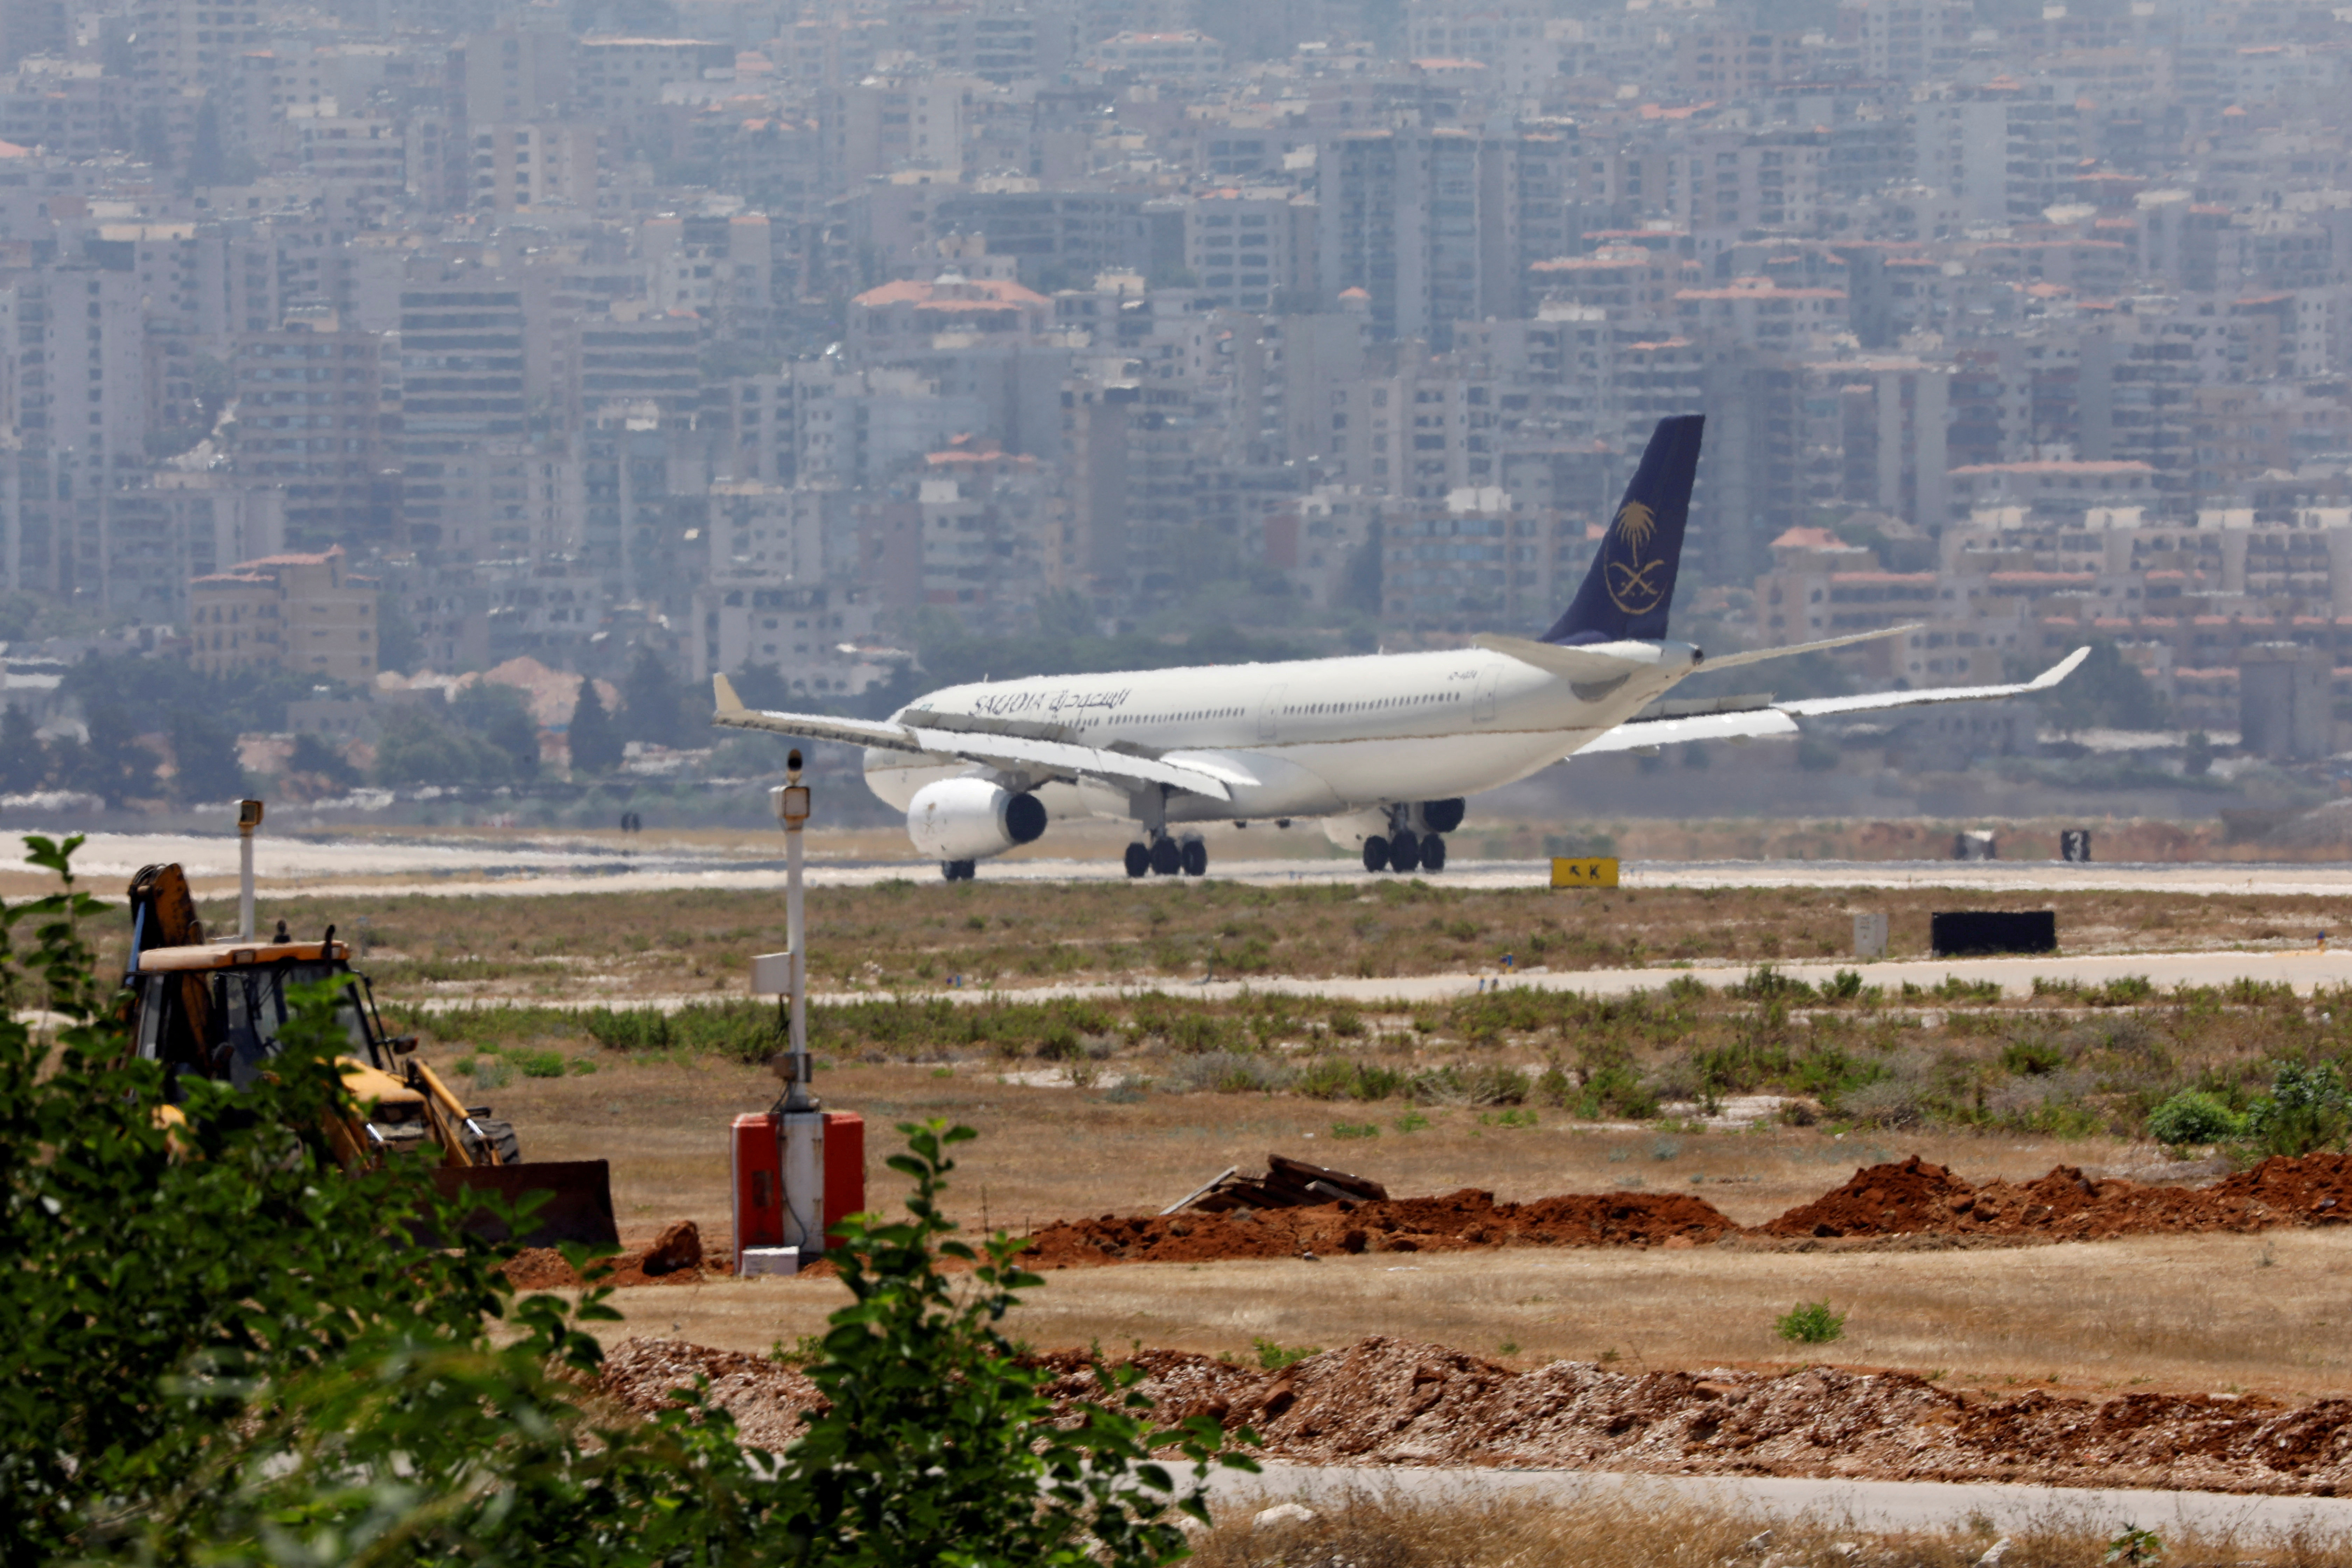 A Saudia plane lands at Rafik al-Hariri airport in Beirut